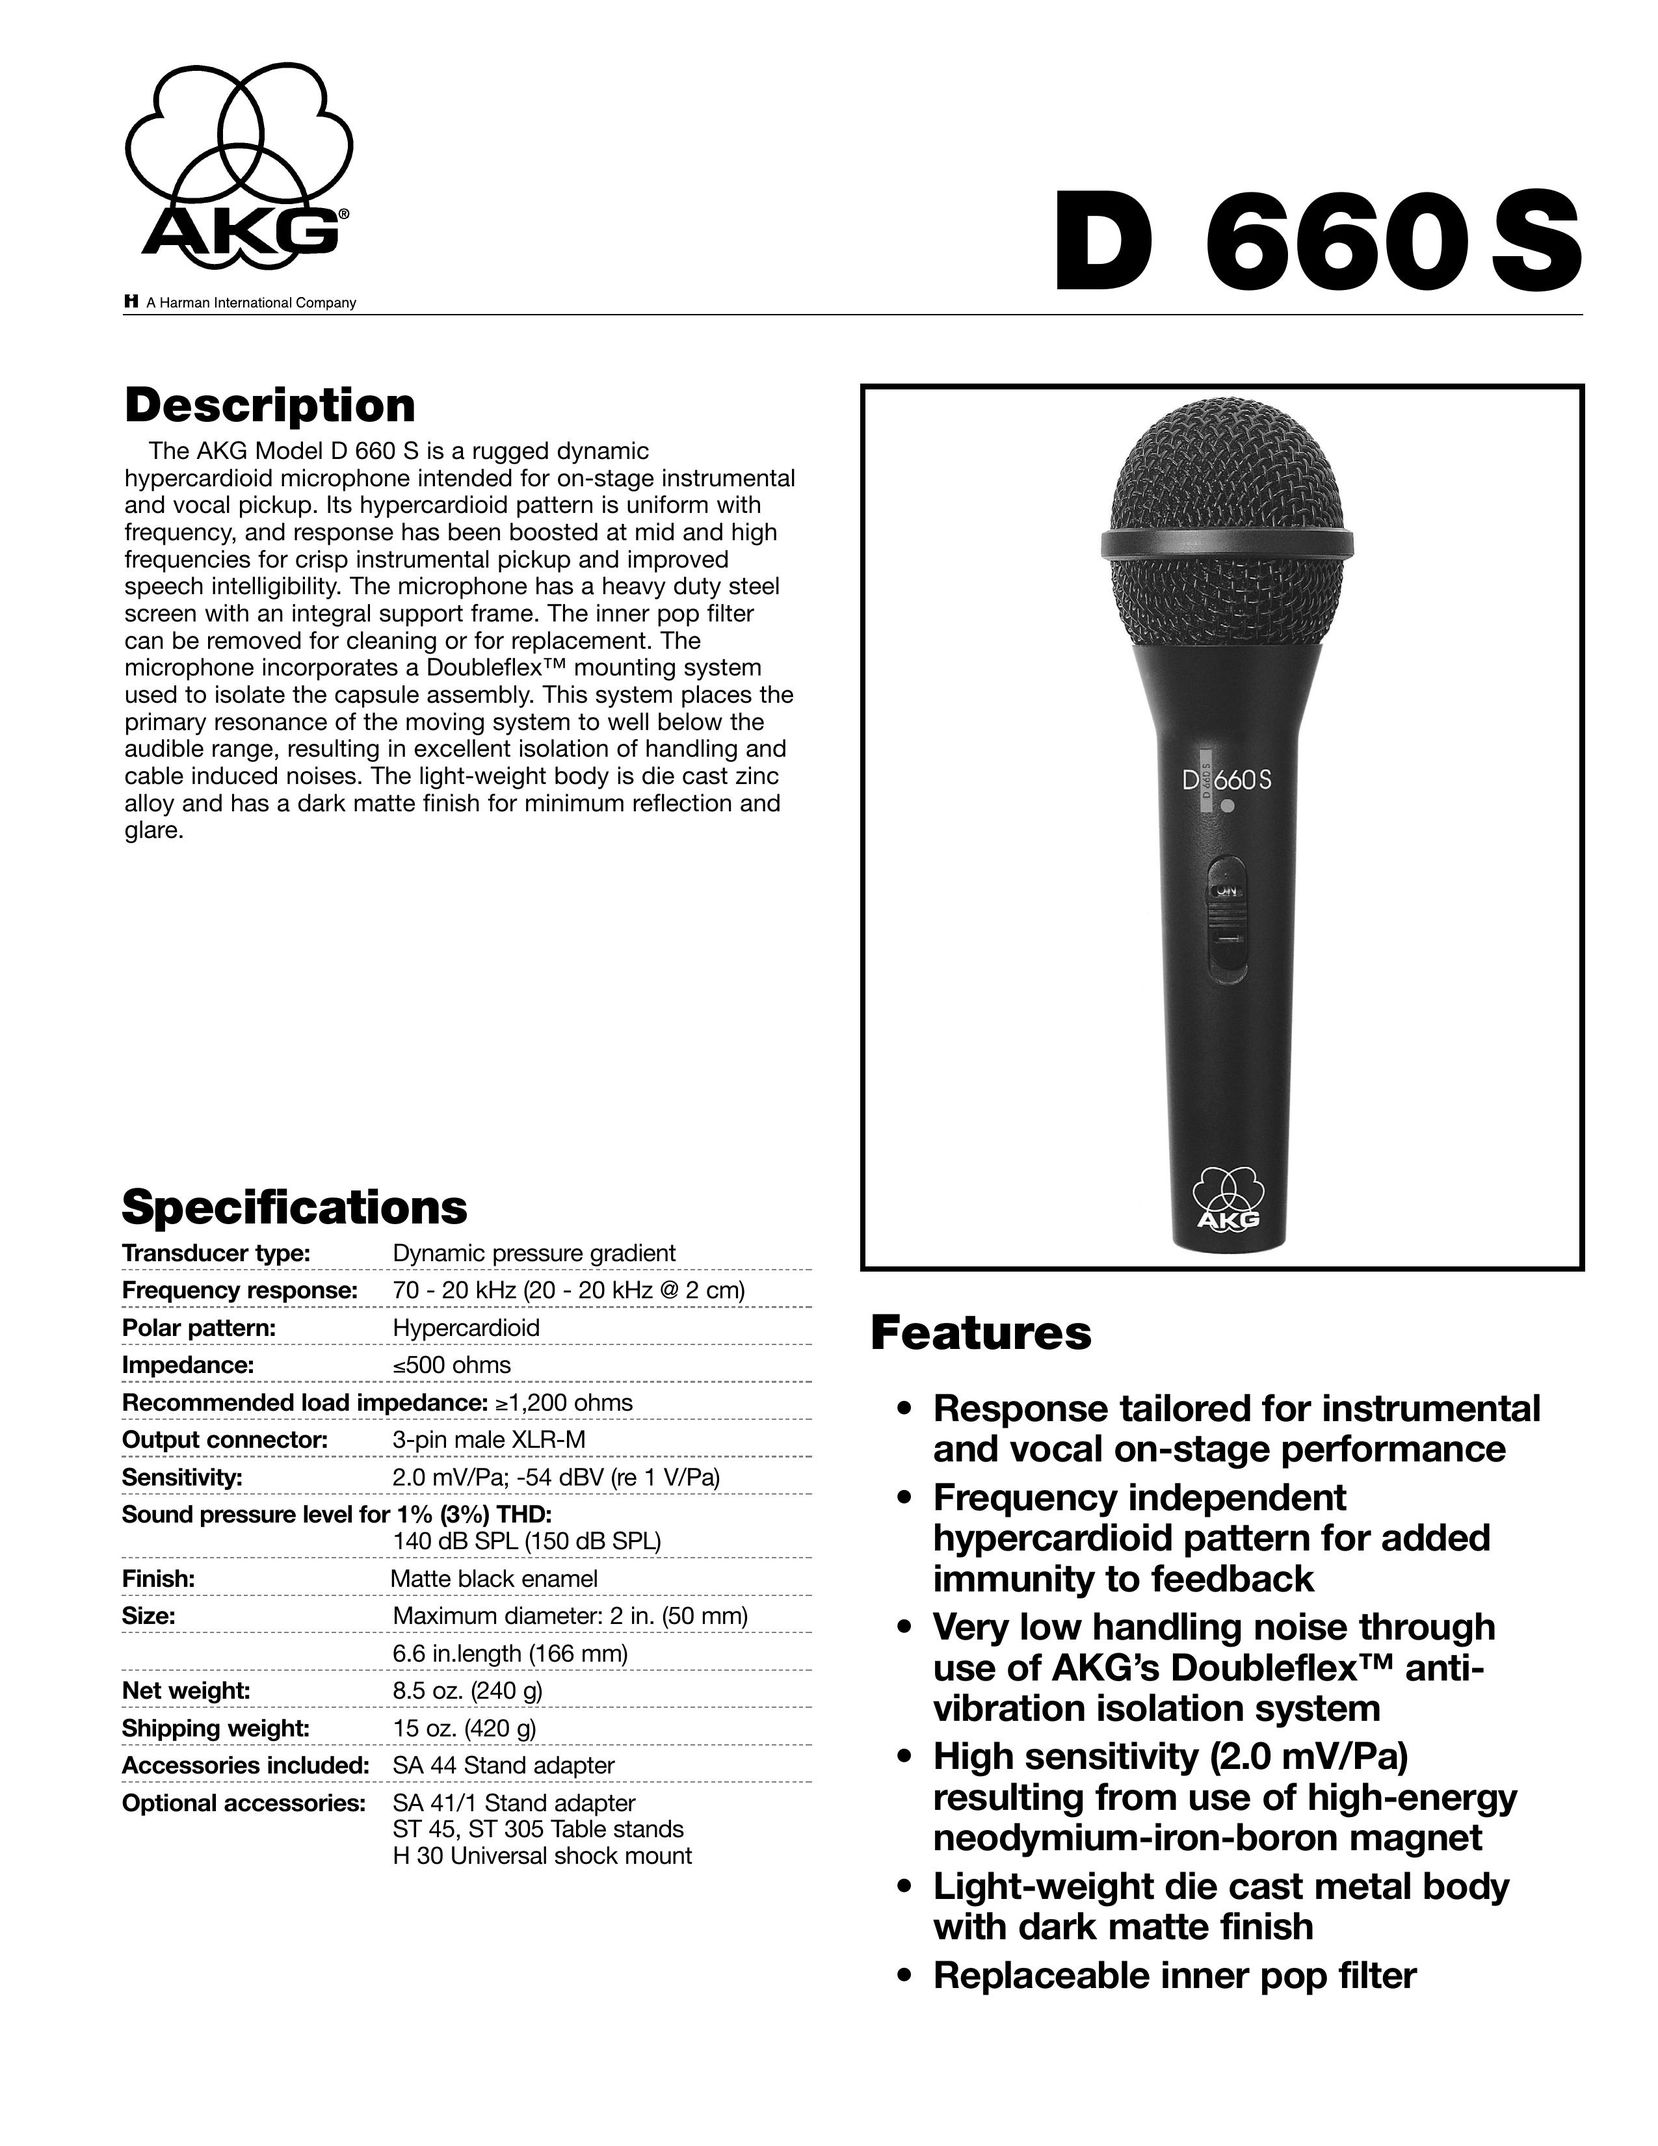 AKG Acoustics D660S Headphones User Manual